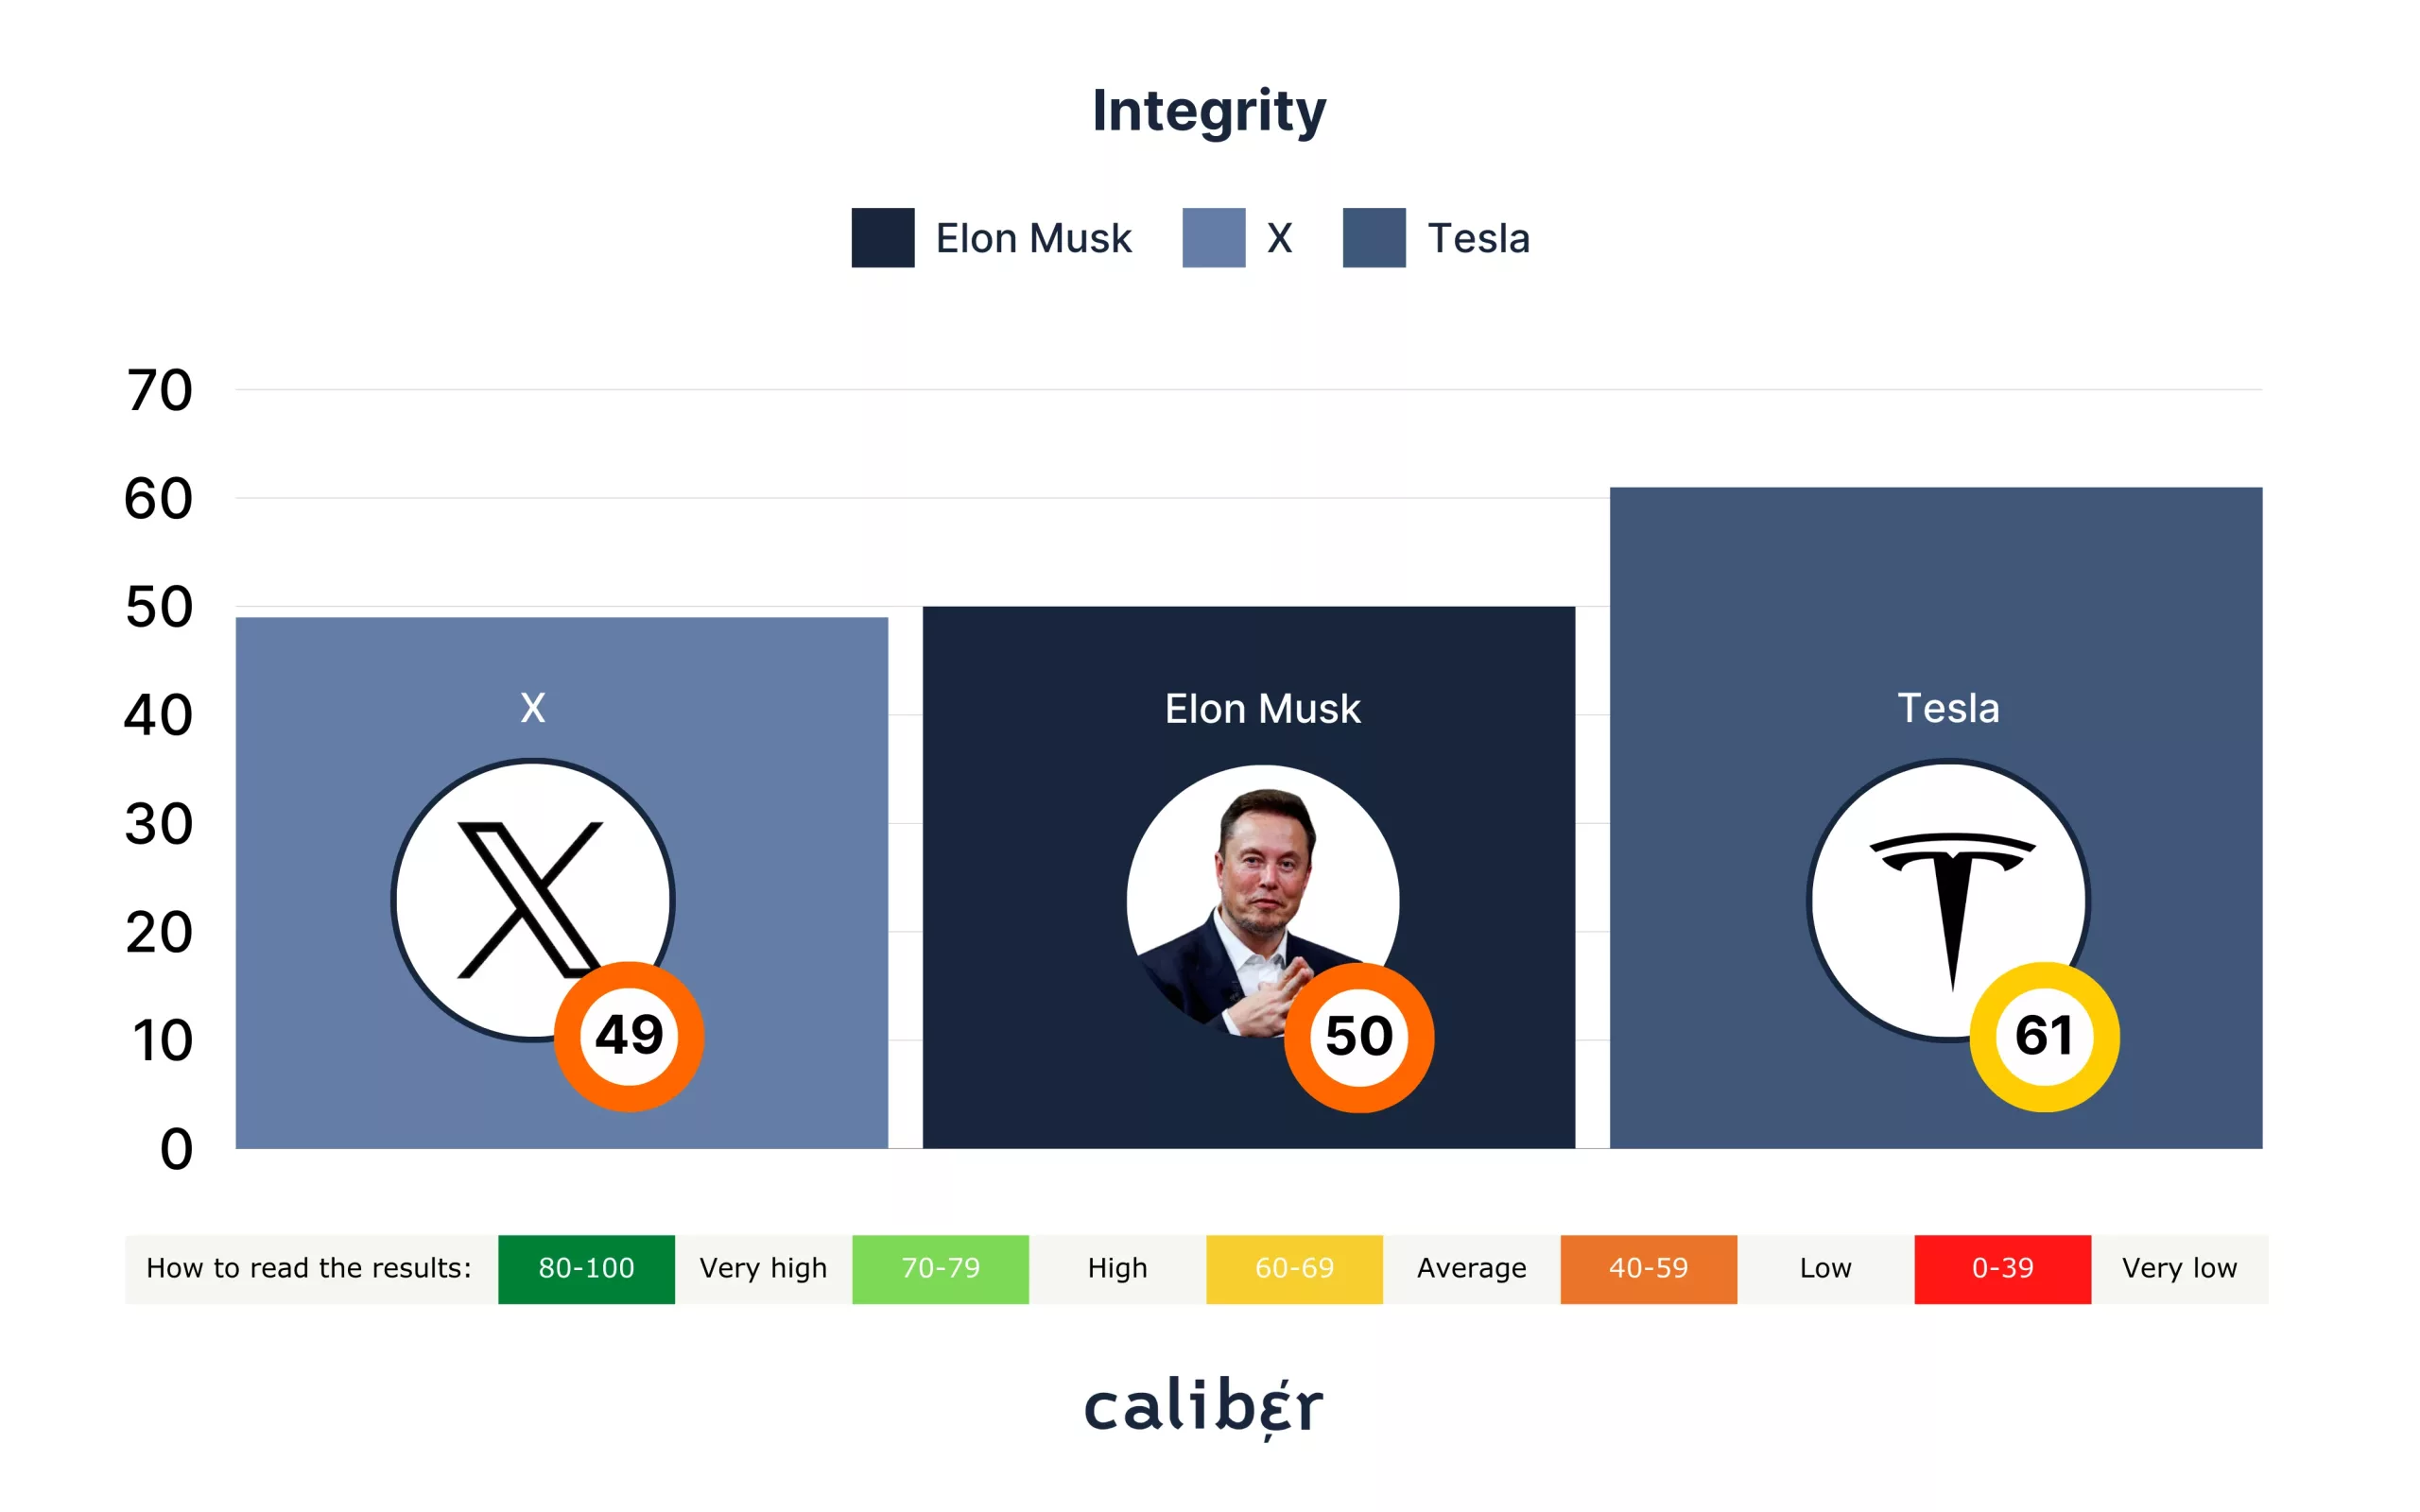 Elon Musk Integrity Score